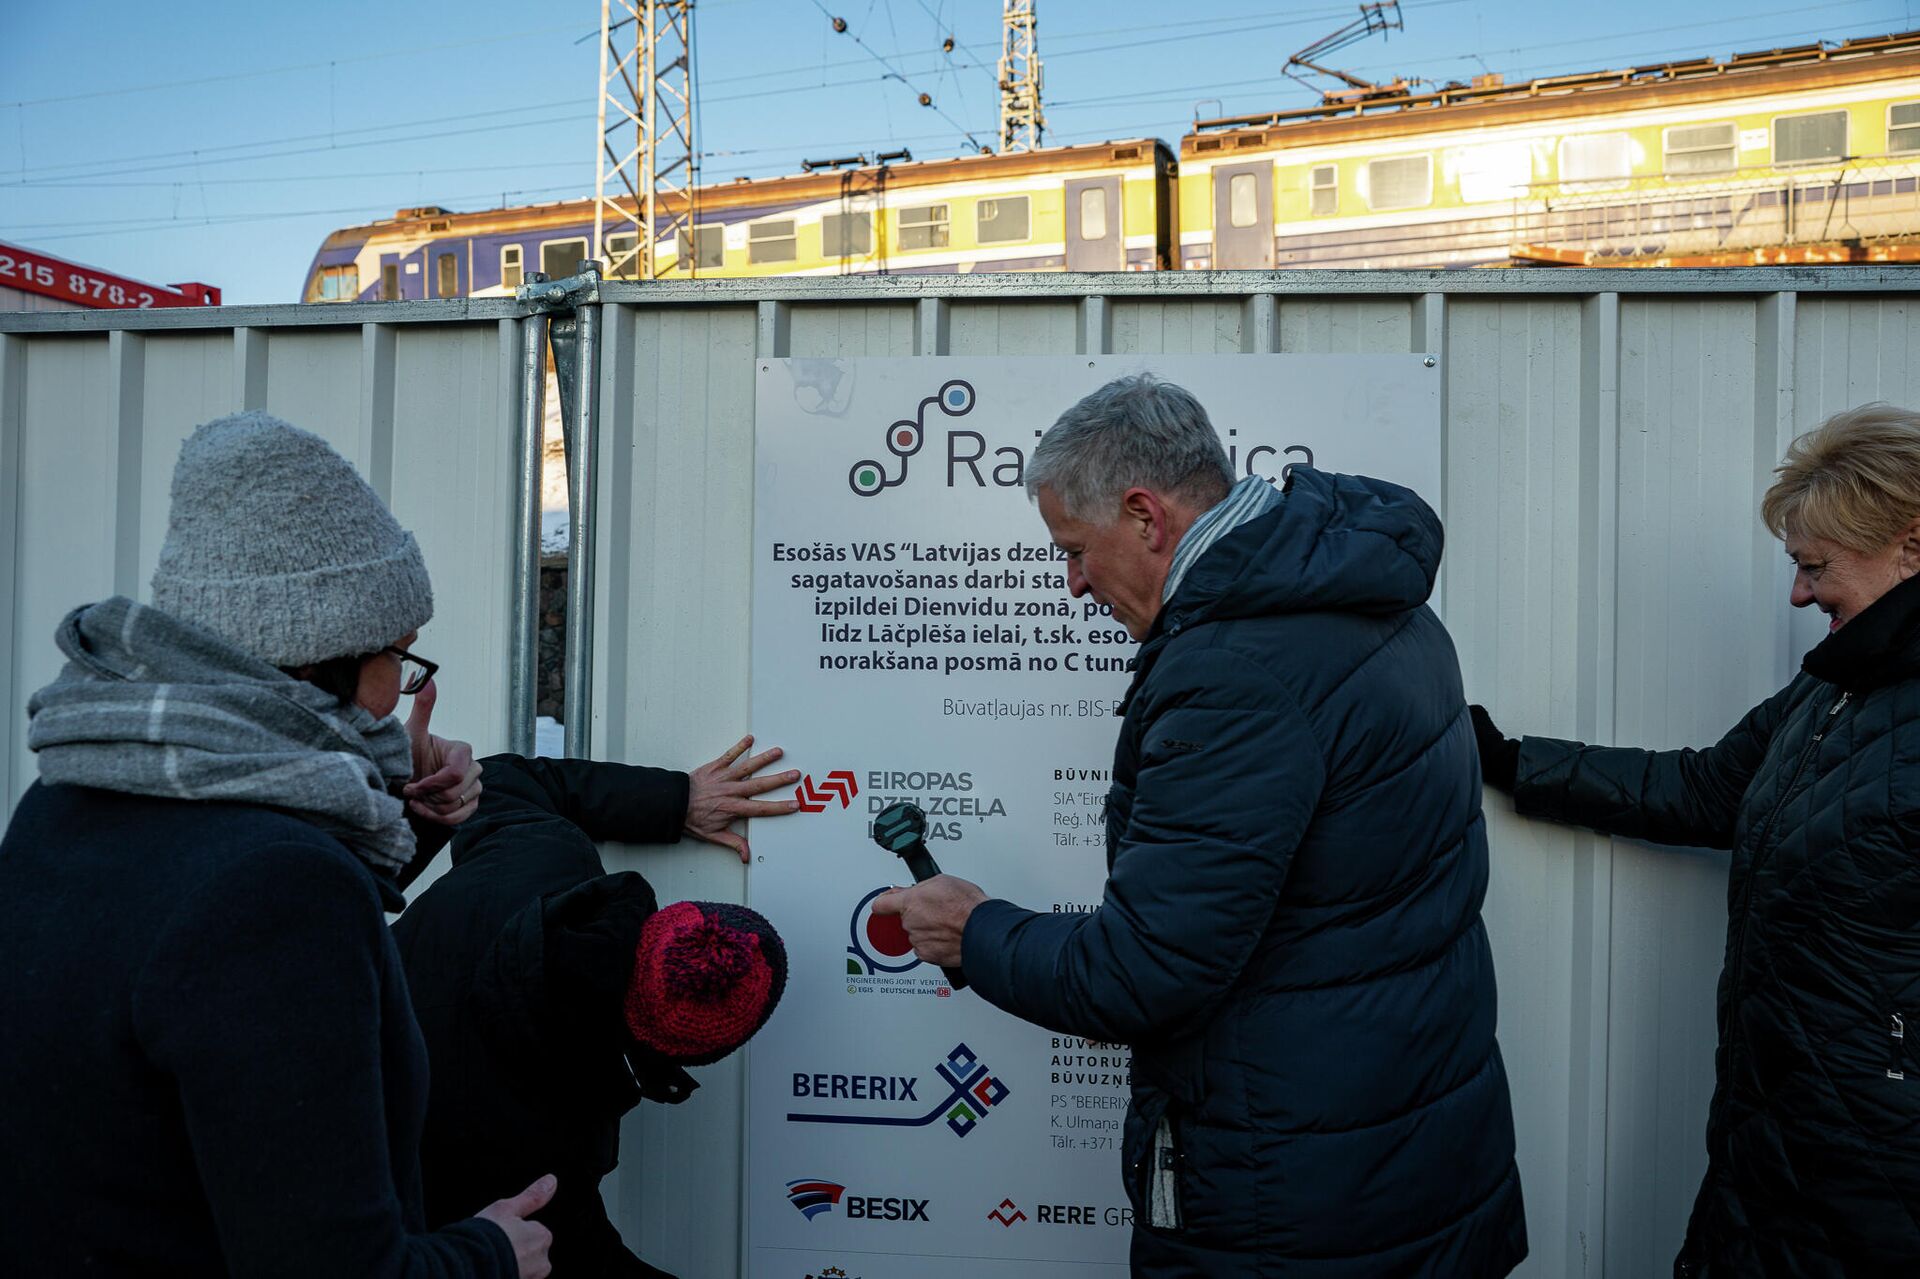 Участники мероприятия устанавливают информационный щит на заборе строительной площадки - Sputnik Латвия, 1920, 13.01.2022